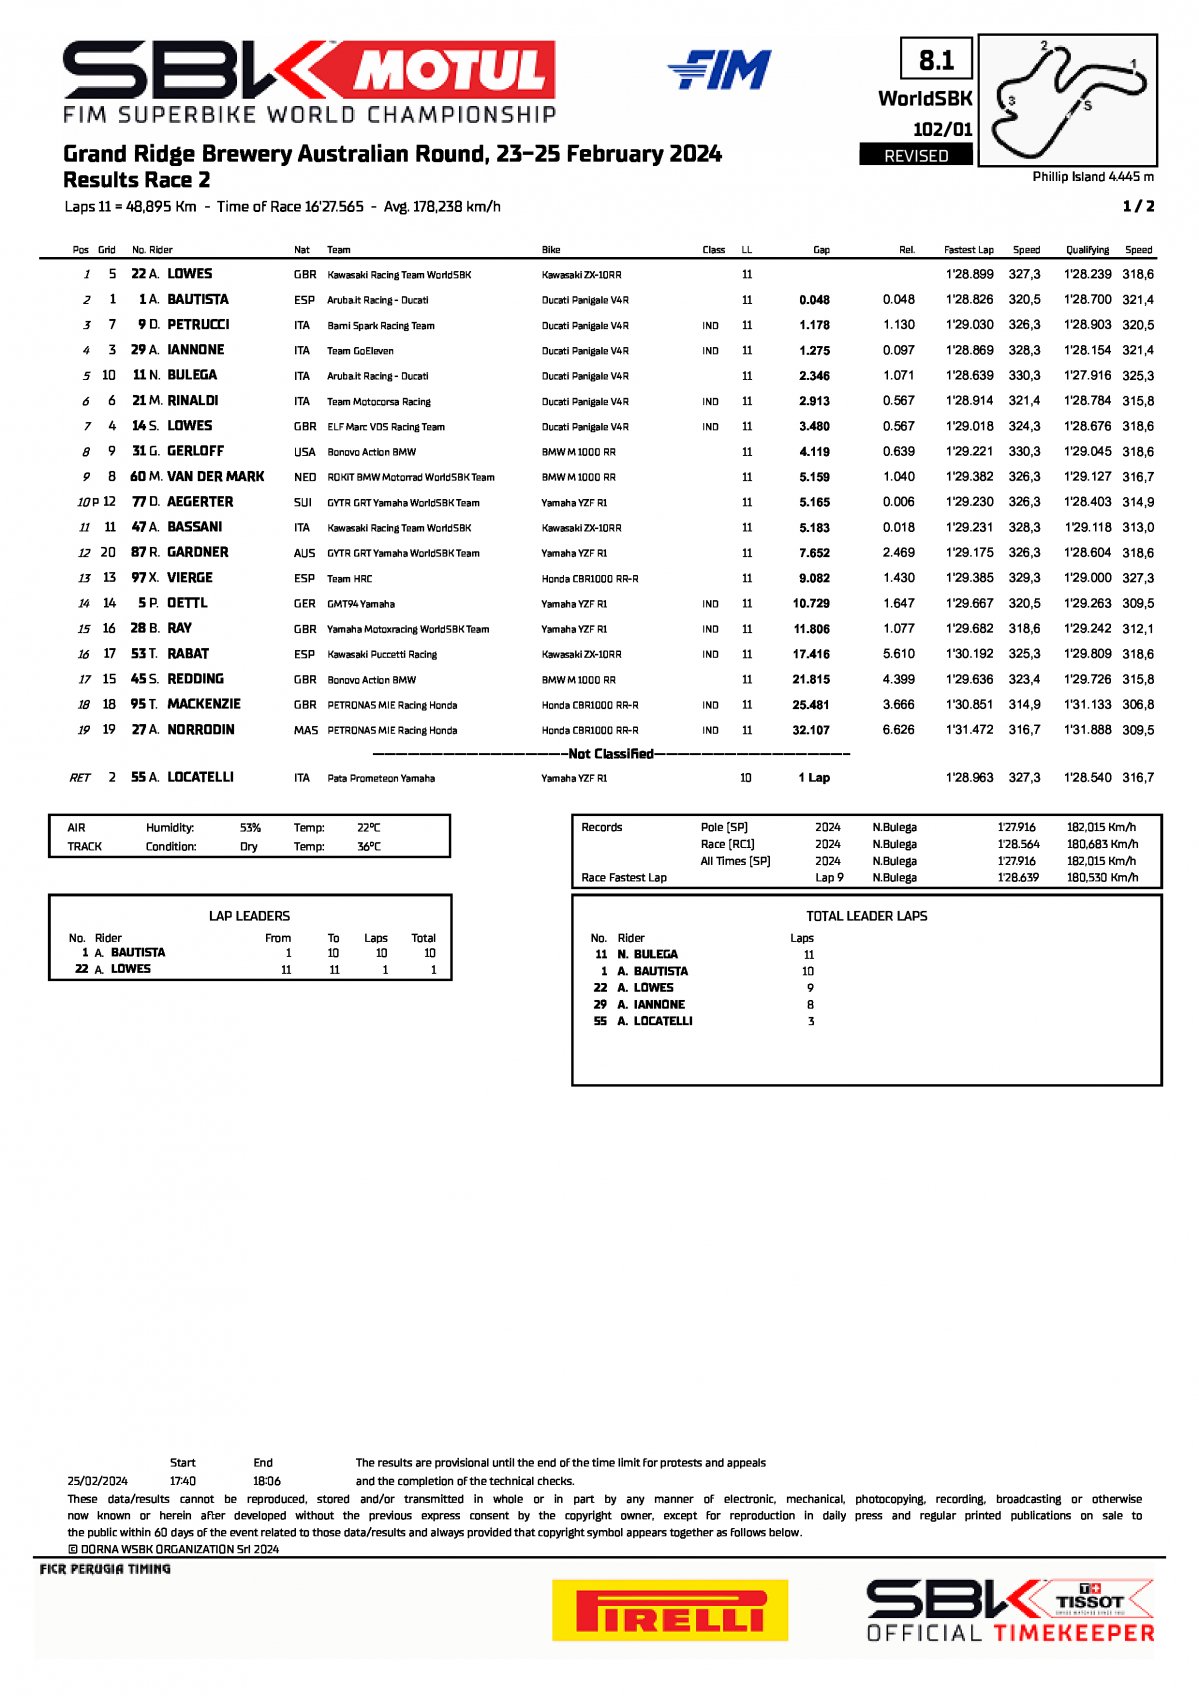 Результаты 2 гонки AUSWorldSBK, Phillip Island (25/02/2024)